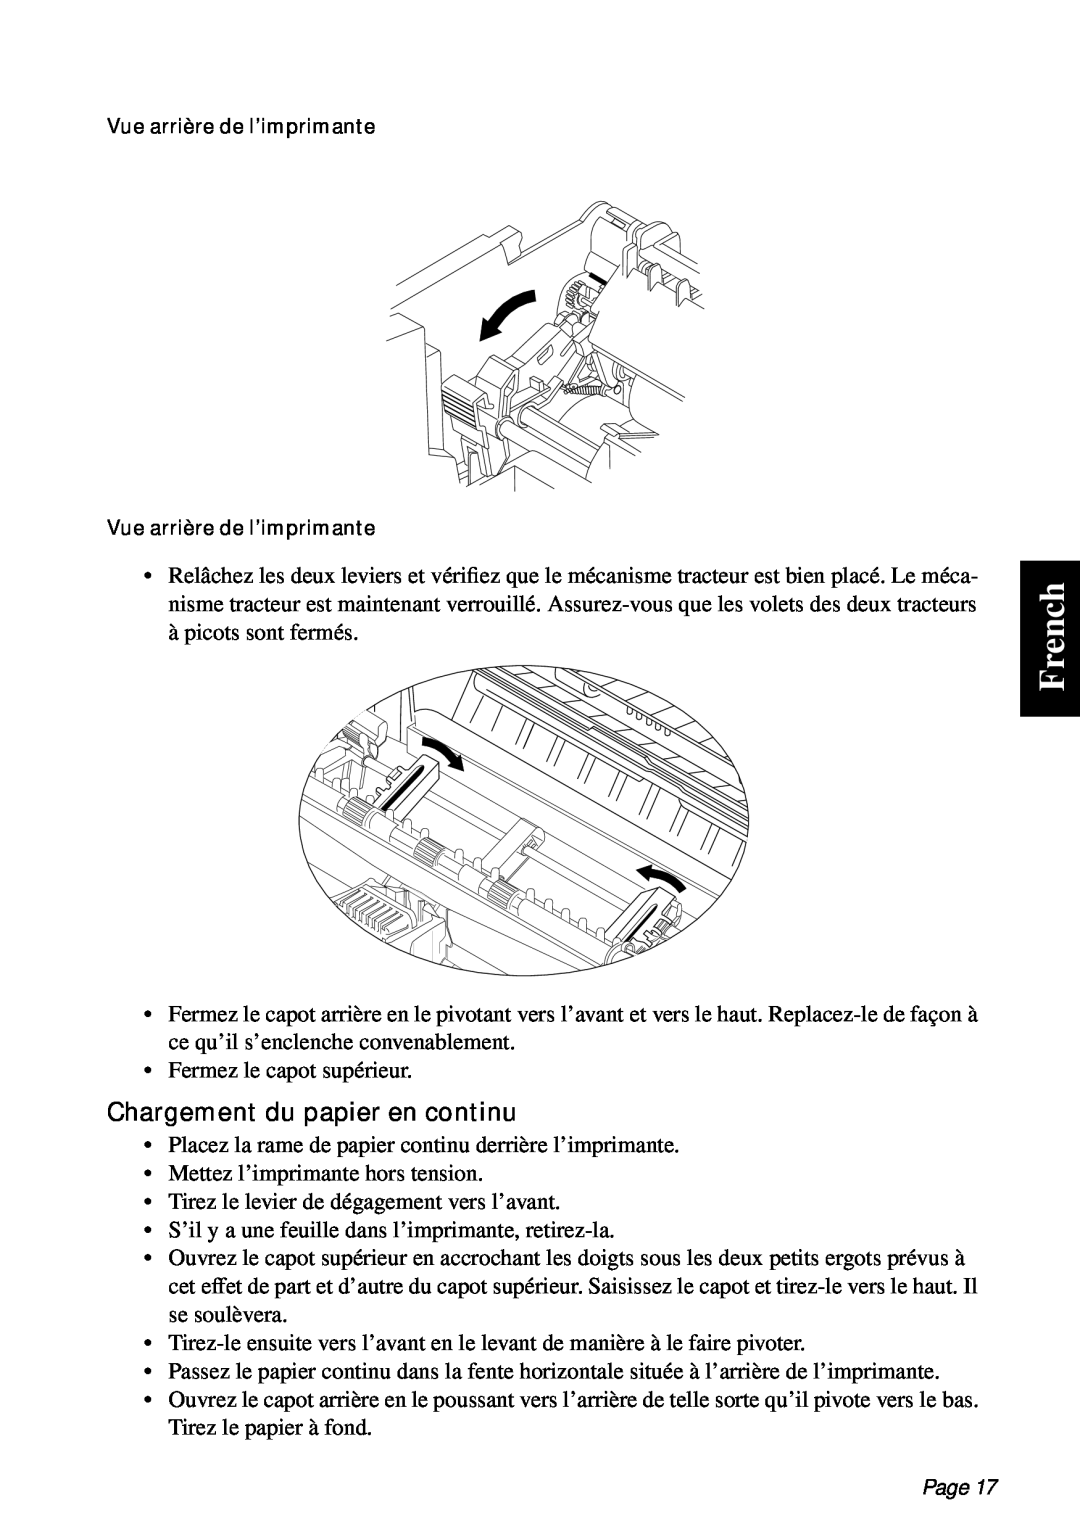 Star Micronics PT-10Q user manual French, Chargement du papier en continu, Page 